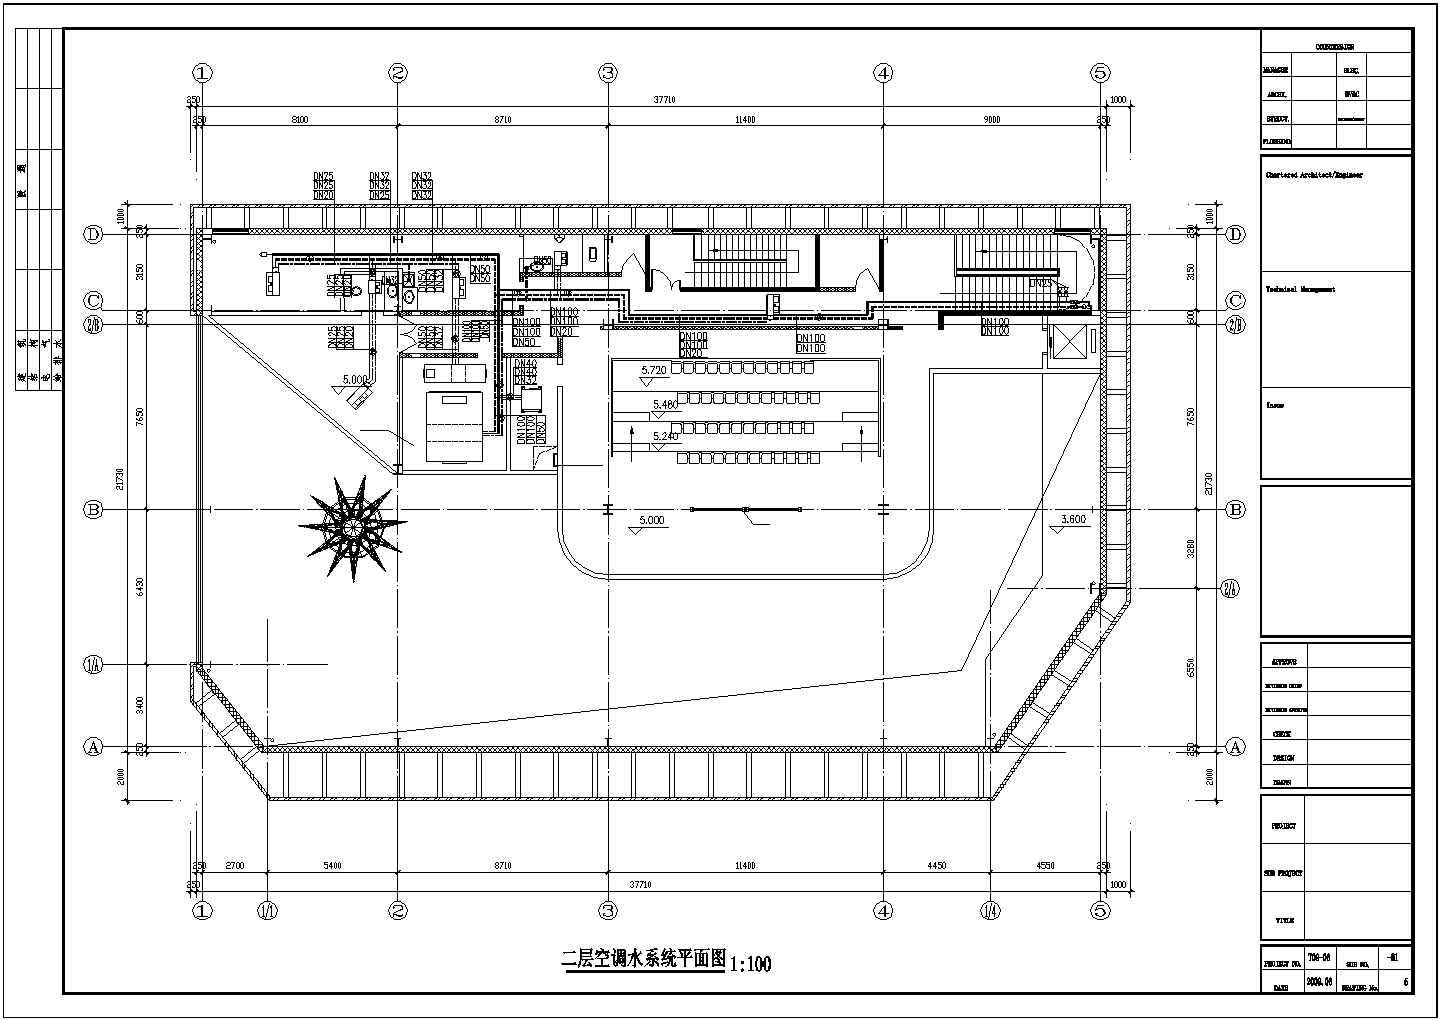 【上海】世博会某展馆空调系统设计图纸